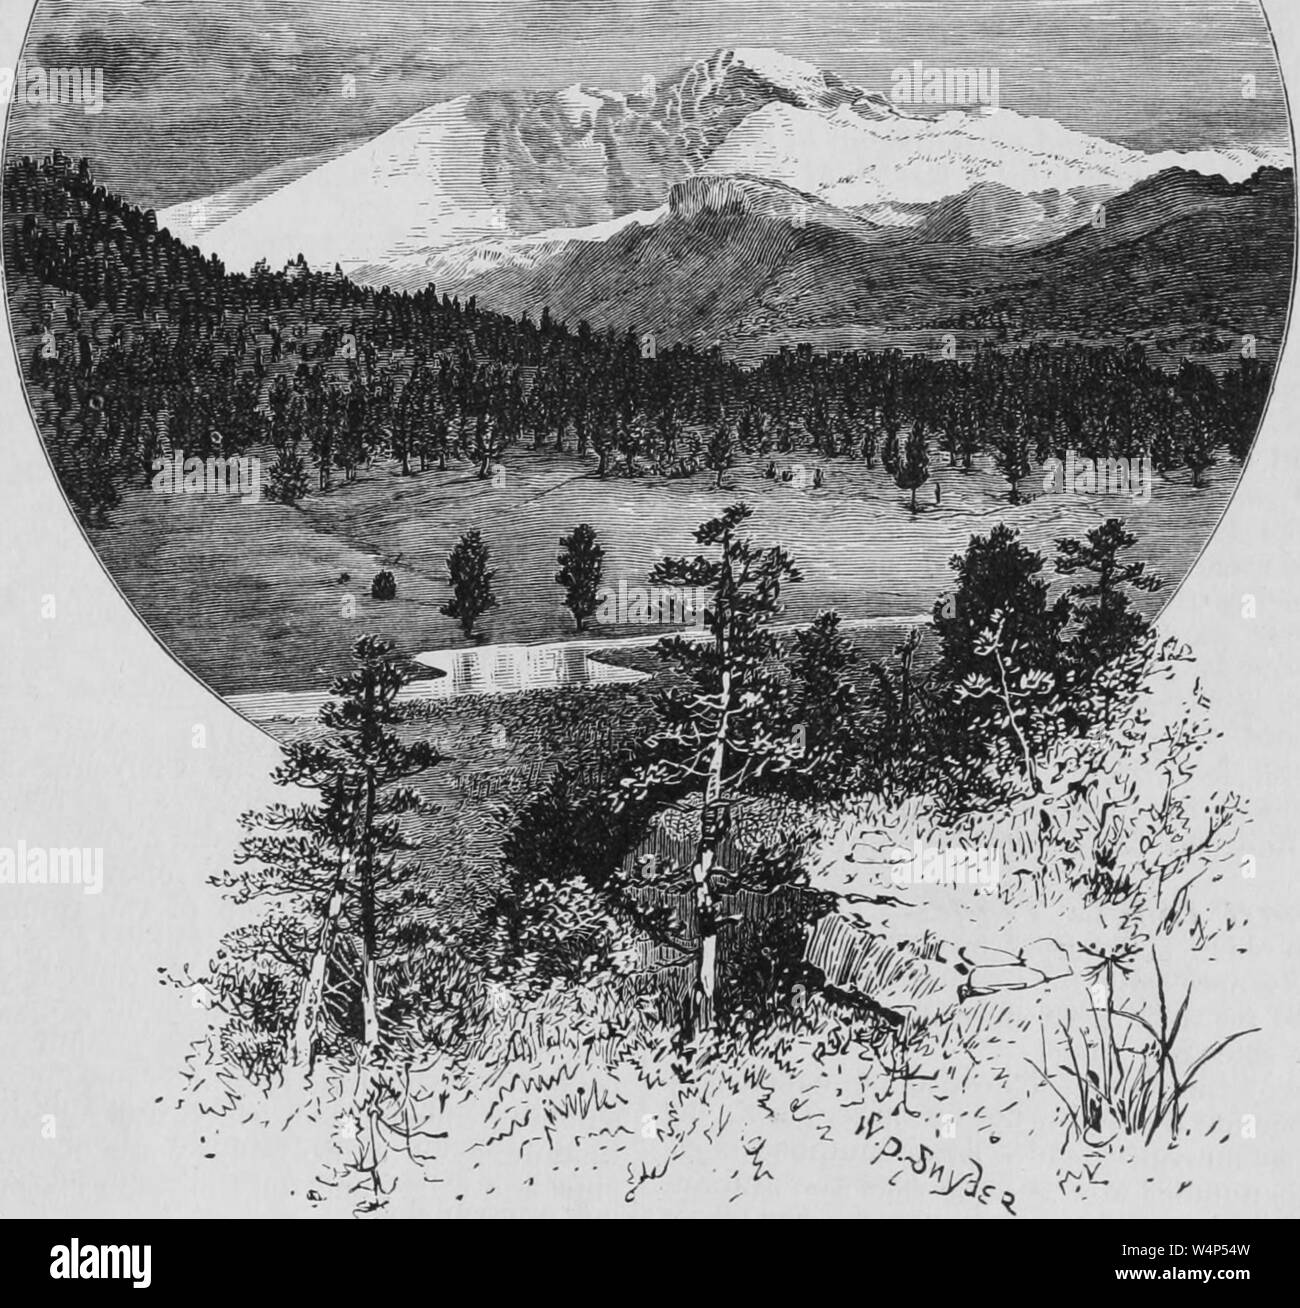 Incisione del Longs Peak visto da Estes Park, montagne rocciose del nord America, dal libro "pacifico" turistici da Henry T. Williams, 1878. La cortesia Internet Archive. () Foto Stock